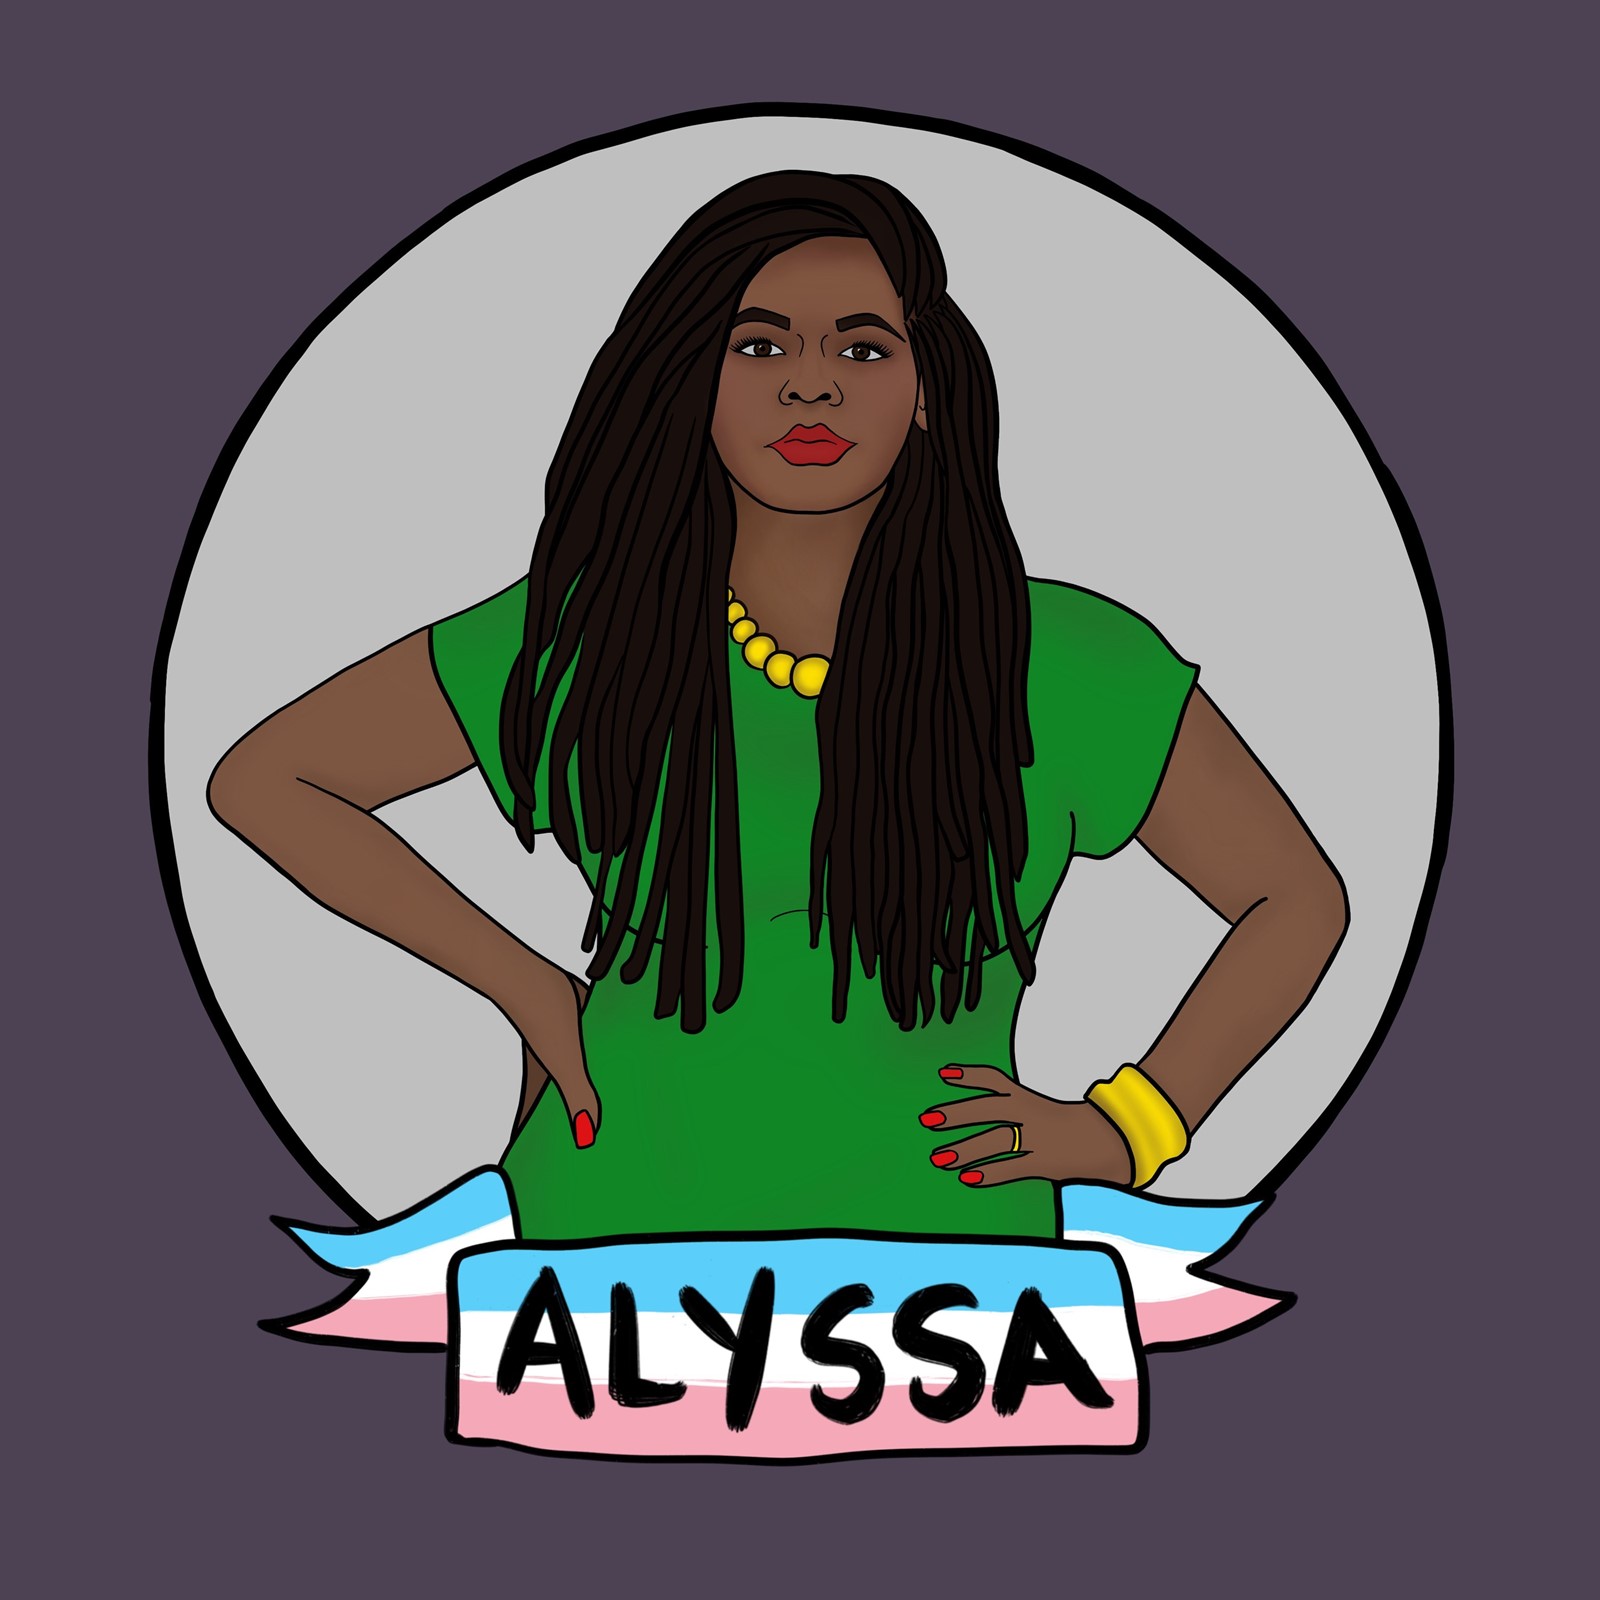 Comrade Alyssa